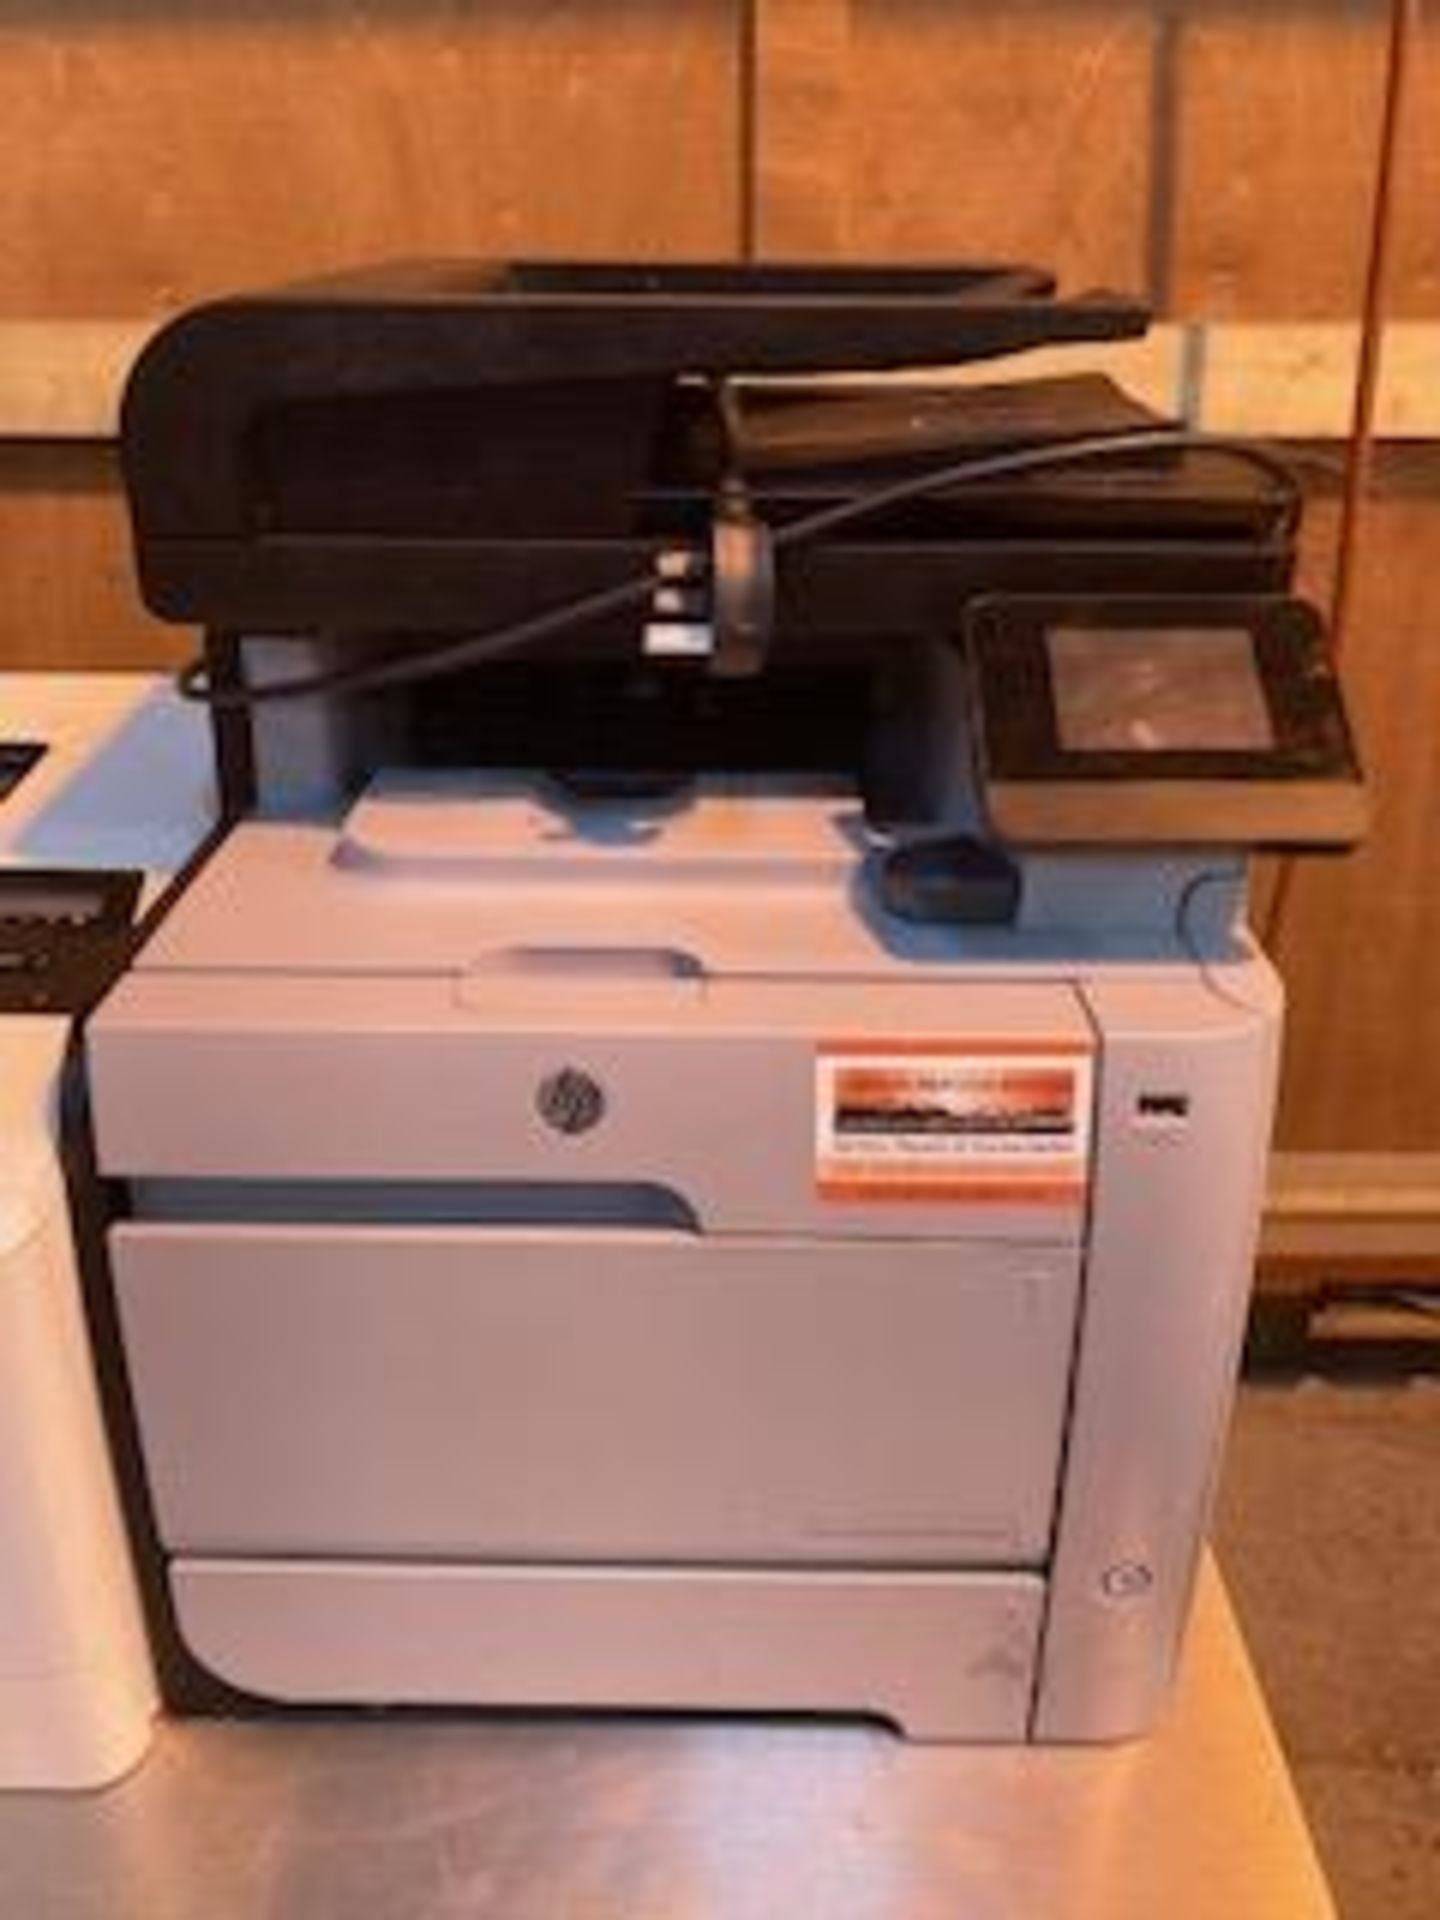 HP Laserjet Pro Colour M476dn A4 Colour Multifunctional Laser Printer